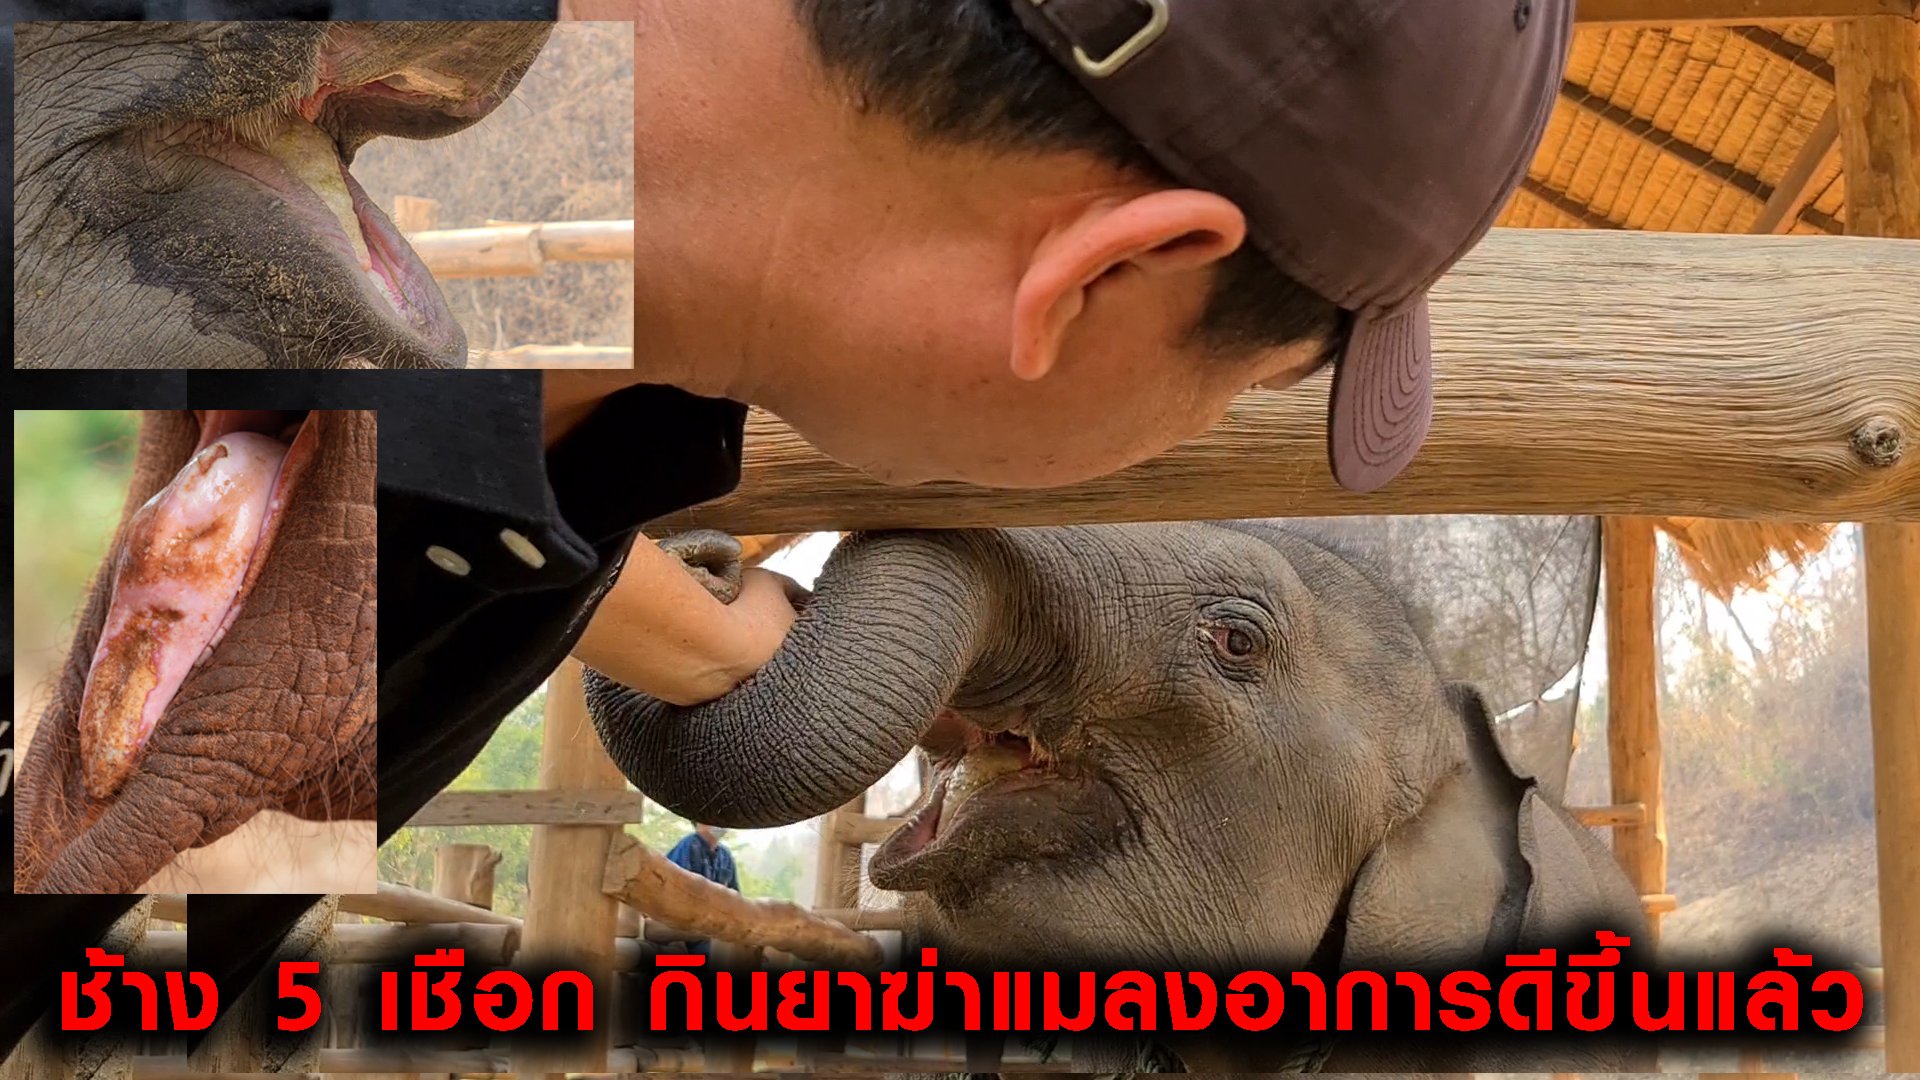 ช้าง5เชือกกินยาฆ่าแมลงที่อ.อมก๋อยจนได้รับบาดเจ็บถูกส่งตัวรักษาที่ ศูนย์อนุรักษ์ช้างไทยล่าสุดอาการดีขึ้นตามลำดับ